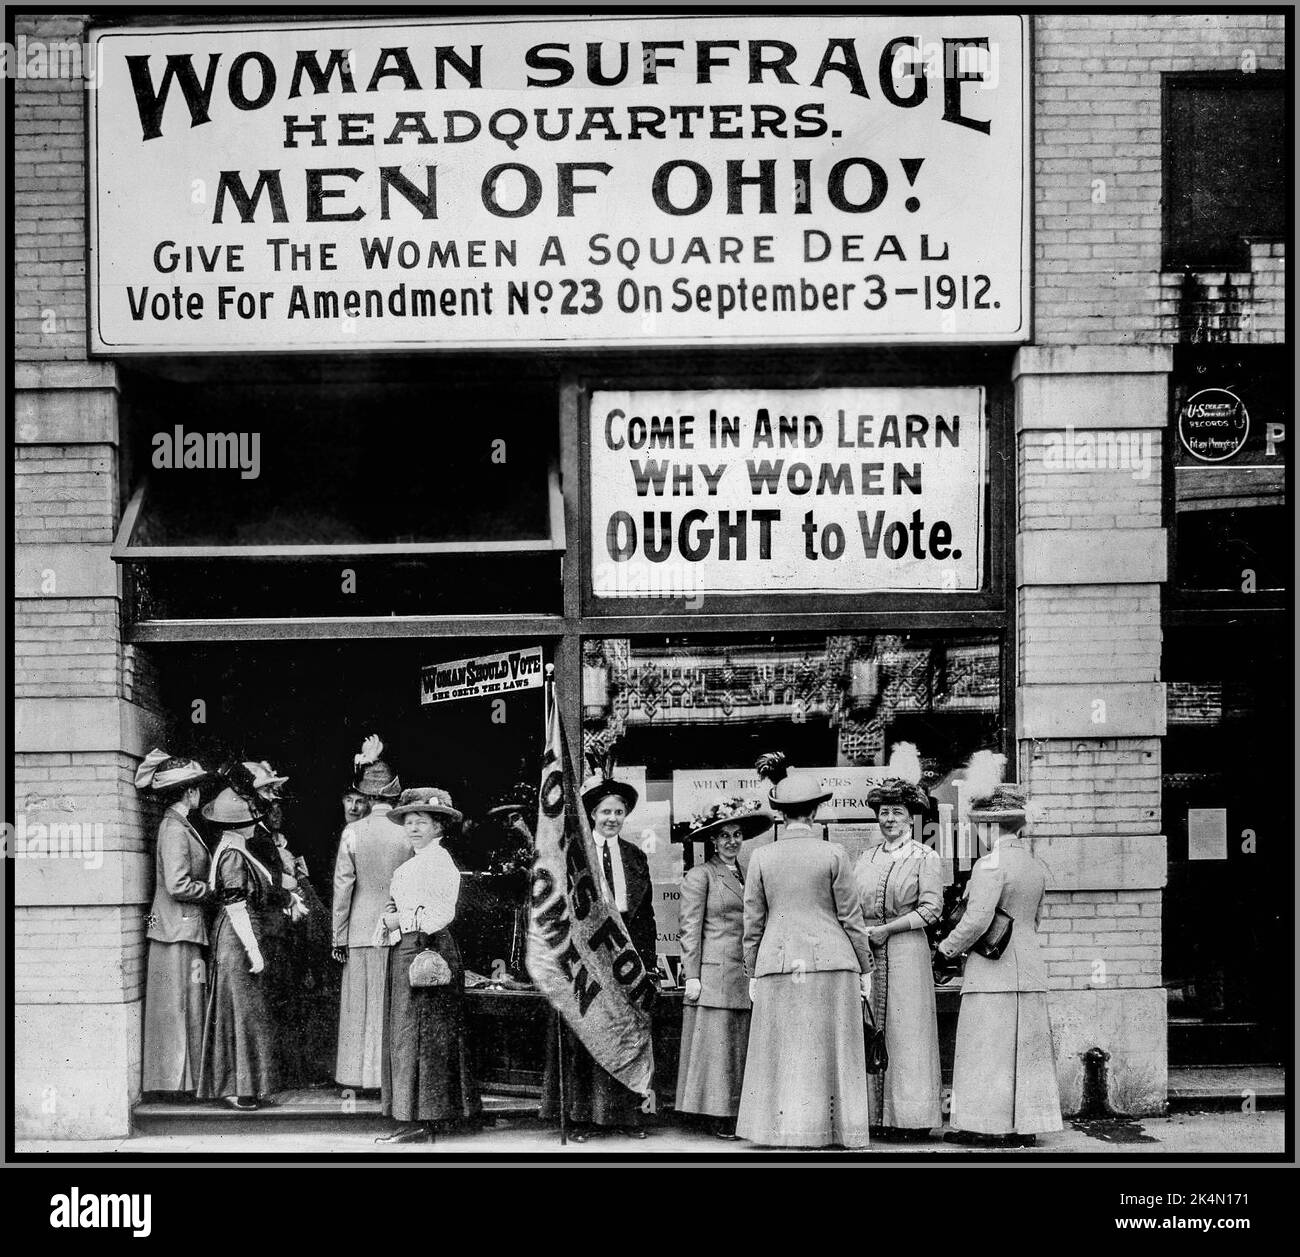 Suffragio femminile HQ in Ohio USA. Suffragettes appellano gli uomini DELL'OHIO per un accordo quadro e votano a favore dell'emendamento n. 23 1912. "Vieni a scoprire perché le donne DOVREBBERO votare. Ohio, Stati Uniti Foto Stock